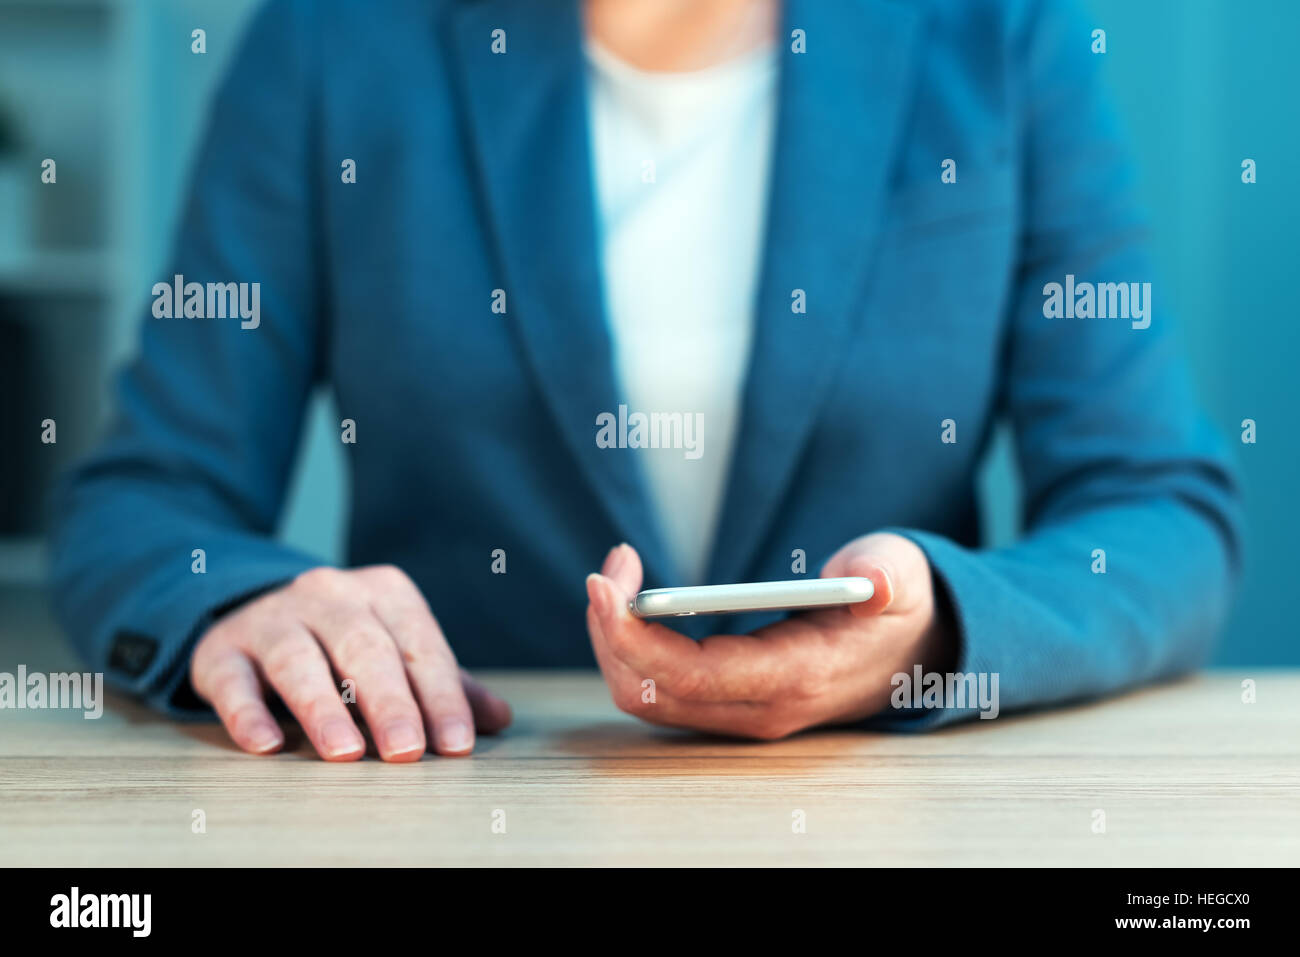 Businesswoman using smartphone, femmes en costume bleu élégant holding mobile phone, selective focus Banque D'Images